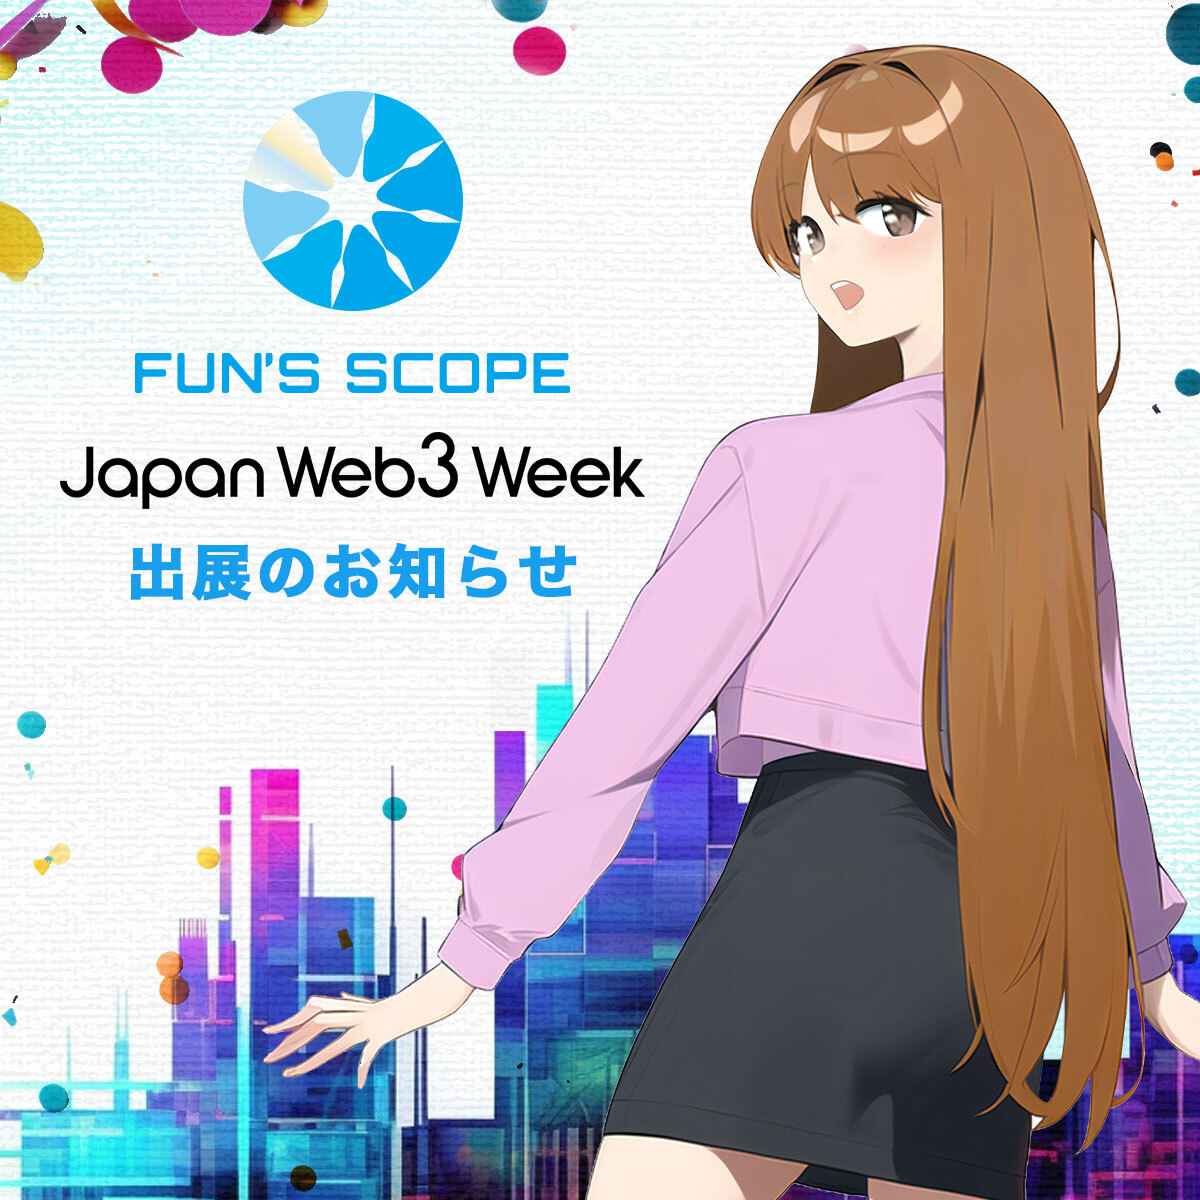 年始のご挨拶と、Japan Web3 Week出展、新キャンペーンについて